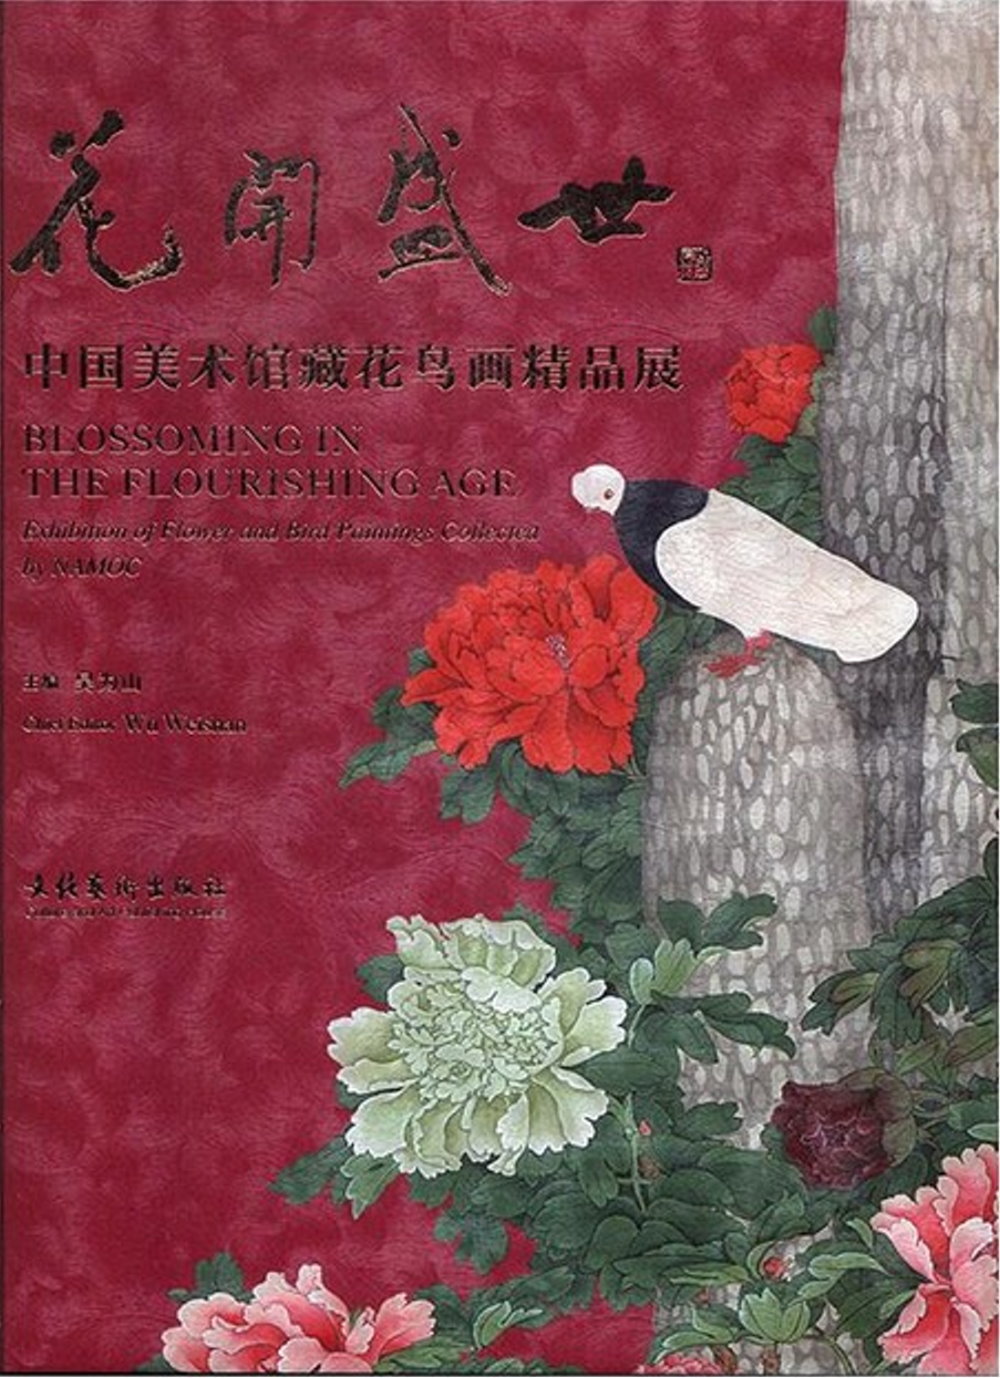 花開盛世：中國美術館藏花鳥畫精品展